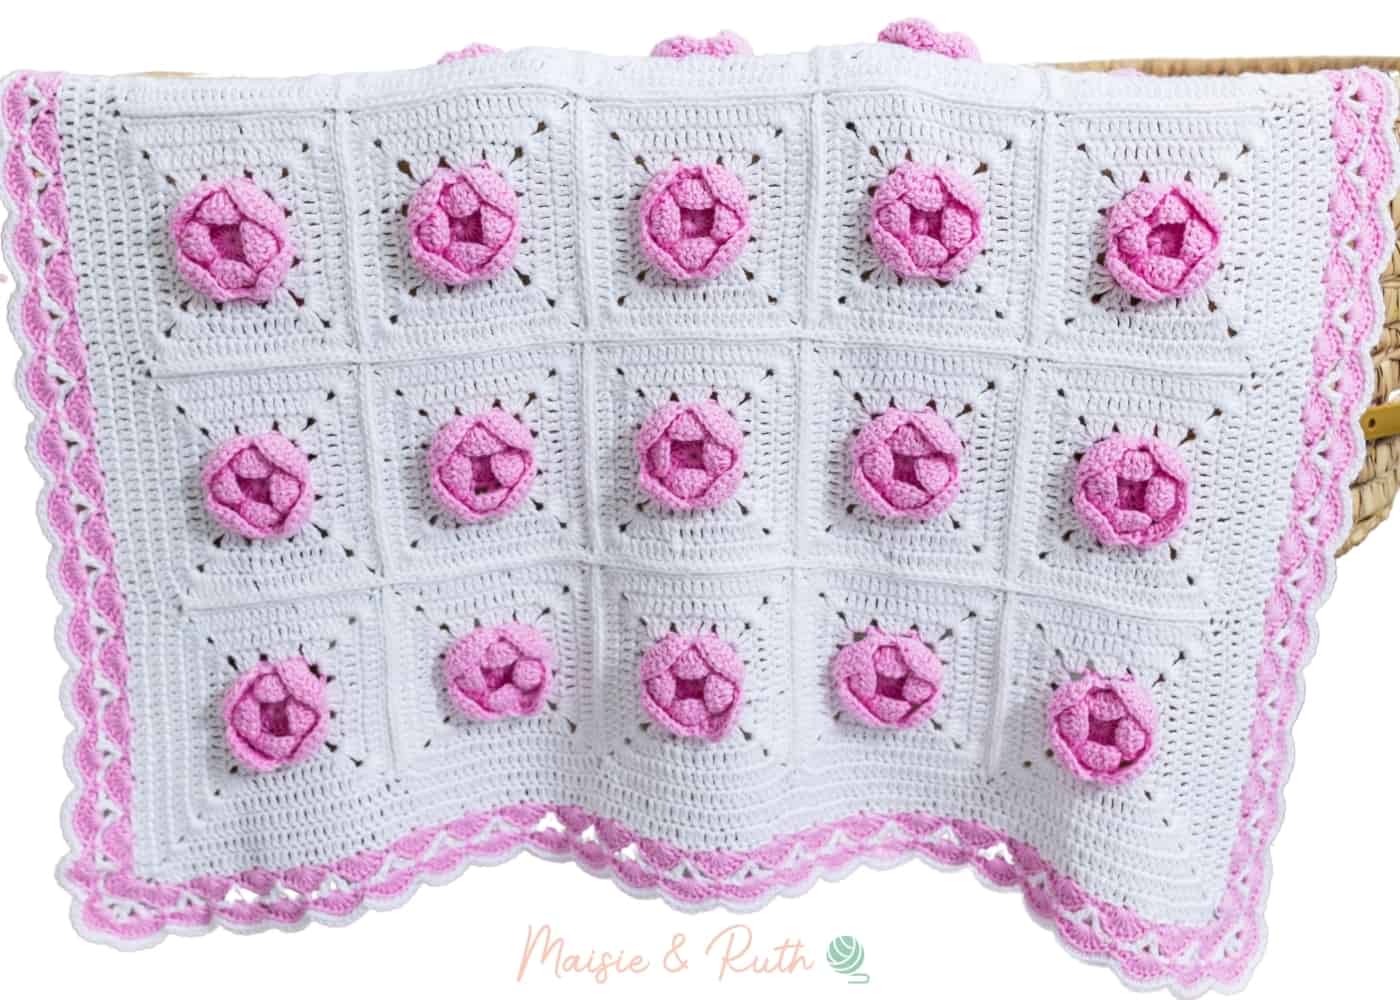 Crochet Rose Baby Blanket Hanging Over Basket